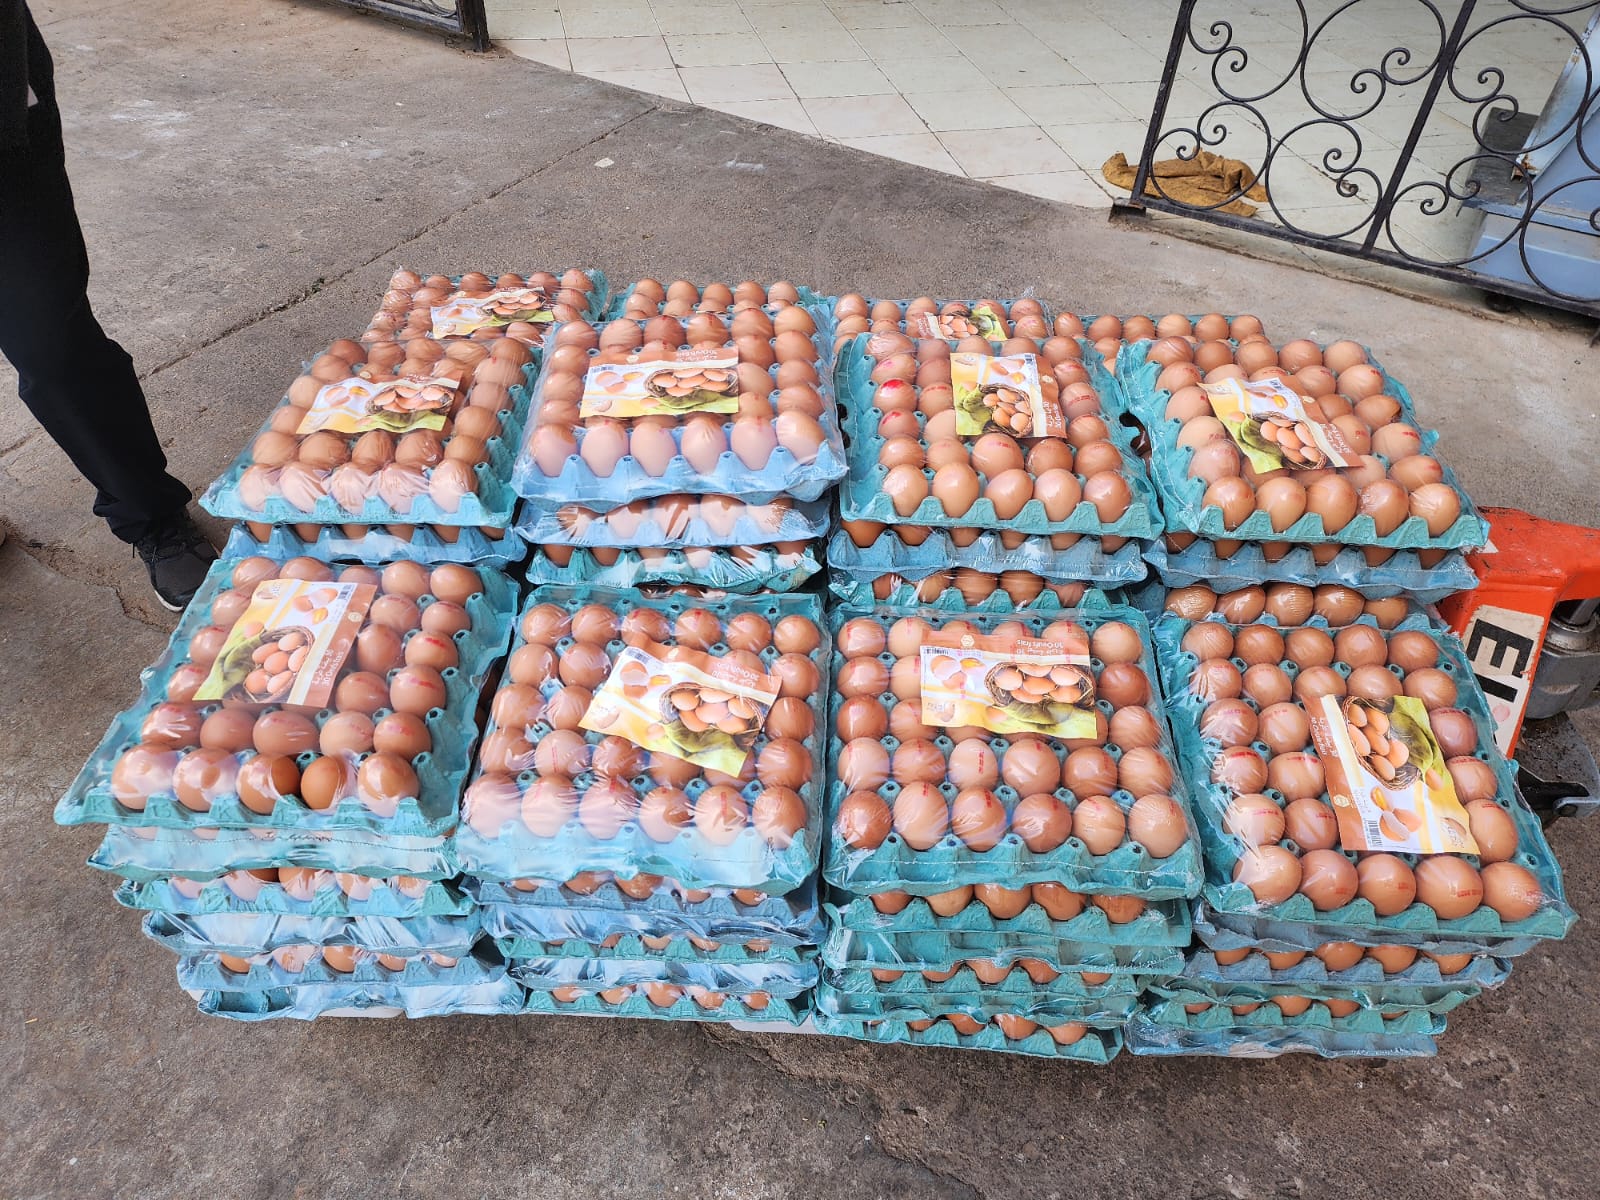 كلفة انتاج البيضة الواحدة يتجاوز درهم ونصف في المغرب